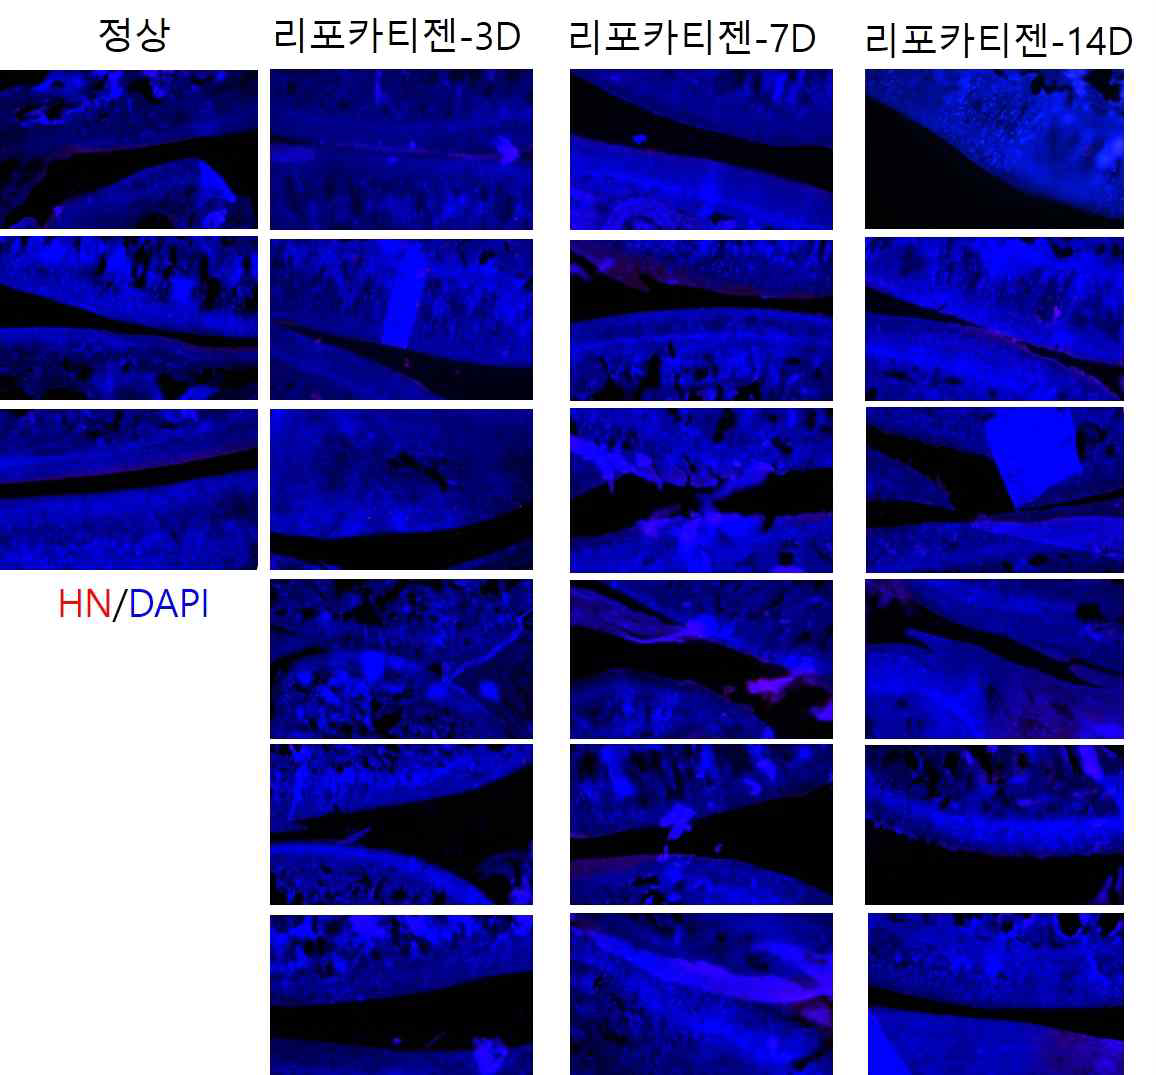 SD rat 골관절염 동물 모델에서 SOX9-6 이입 지방줄기세포의 MoA 확인을 위한 사람특이적 마커(HN)의 면연화학염색 사진